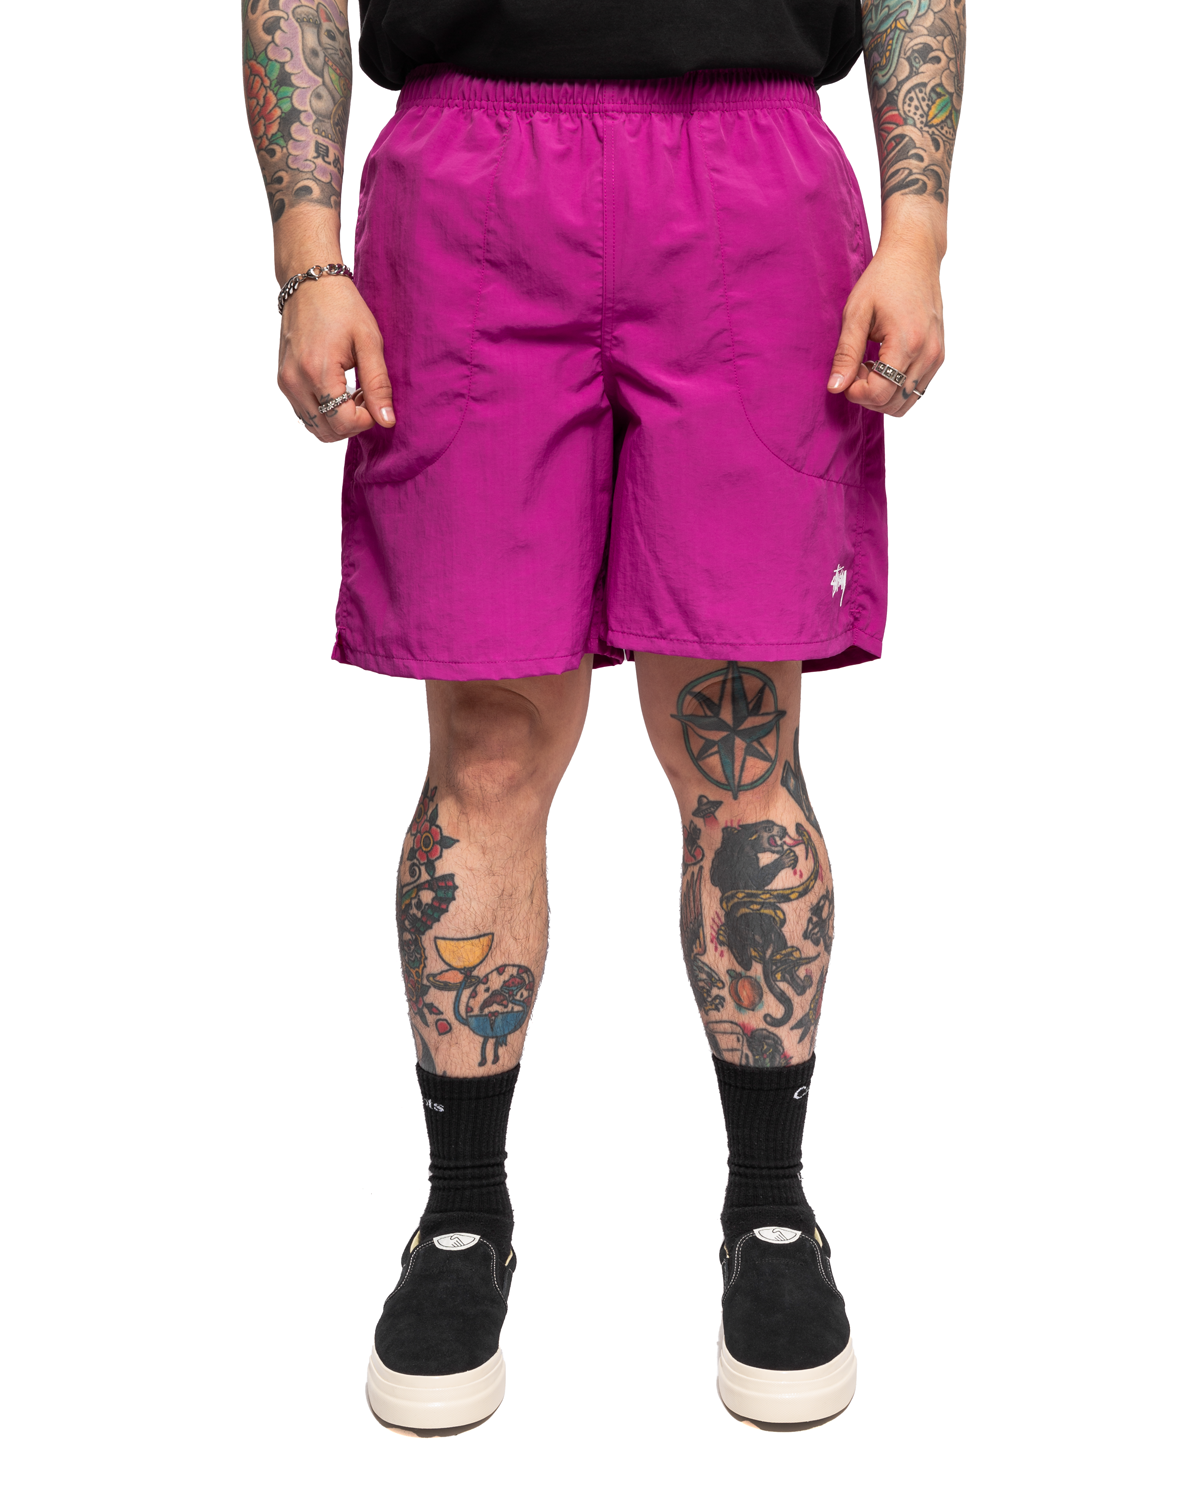 vapor 95 NWOT Men’s cherry blossom Athletic shorts size 36 green E5